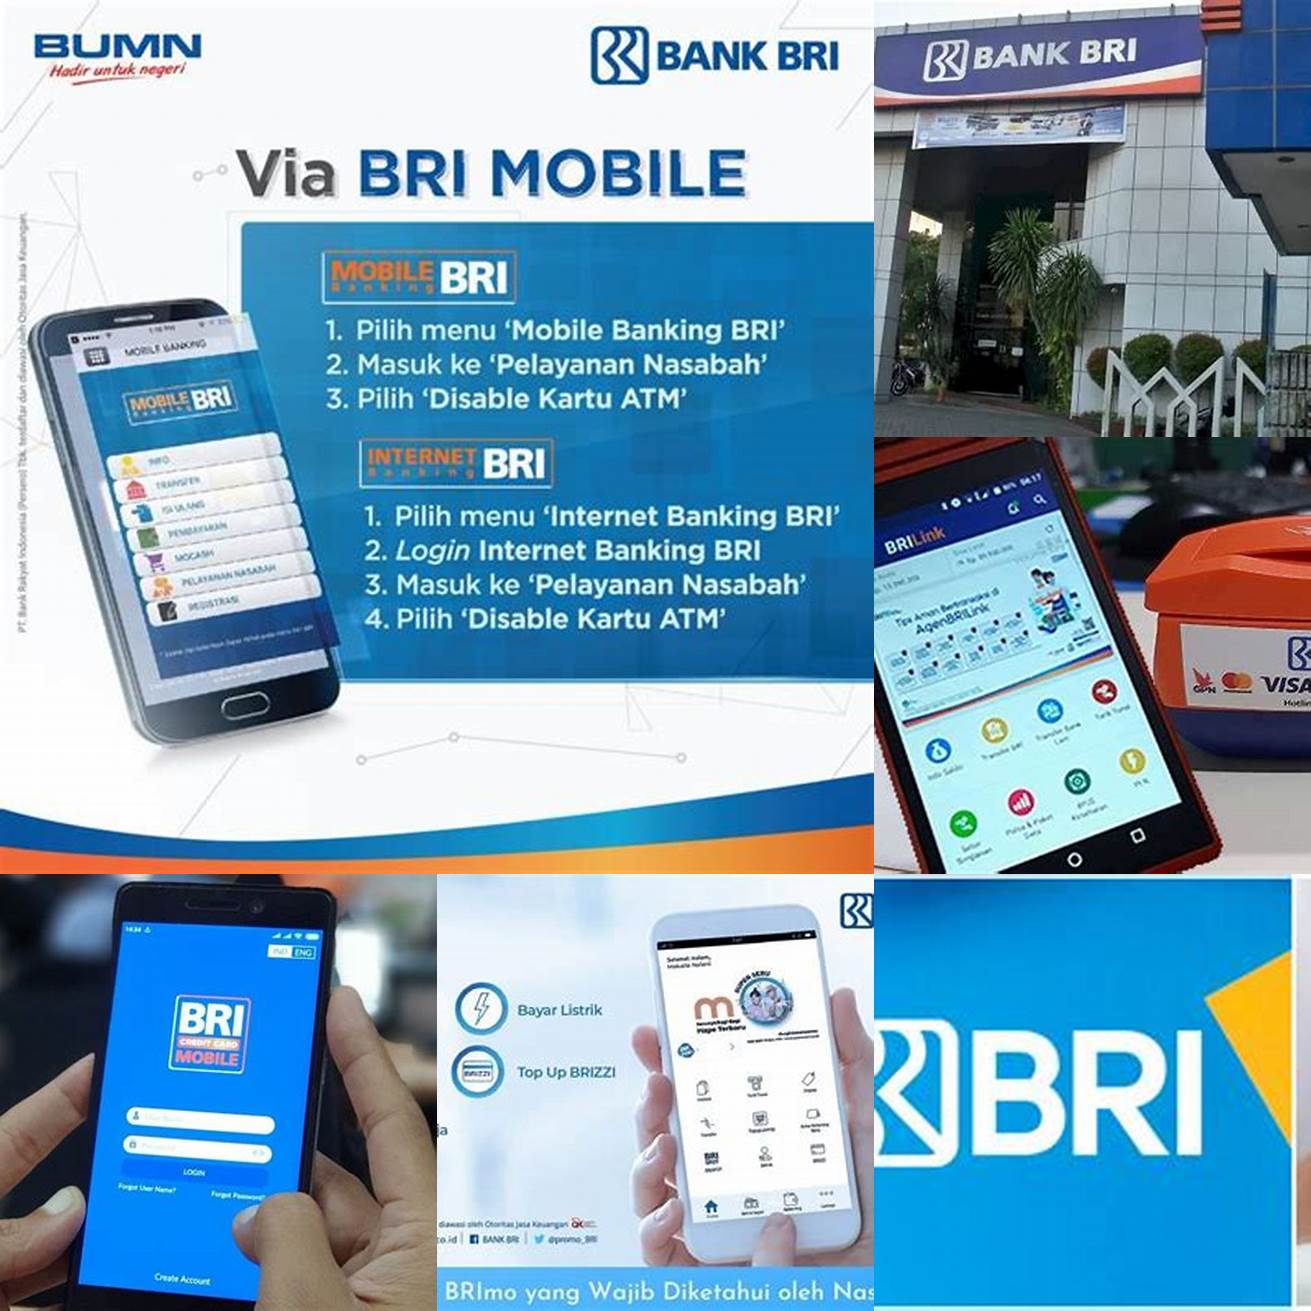 Gunakan fitur keamanan yang disediakan oleh BRI Mobile